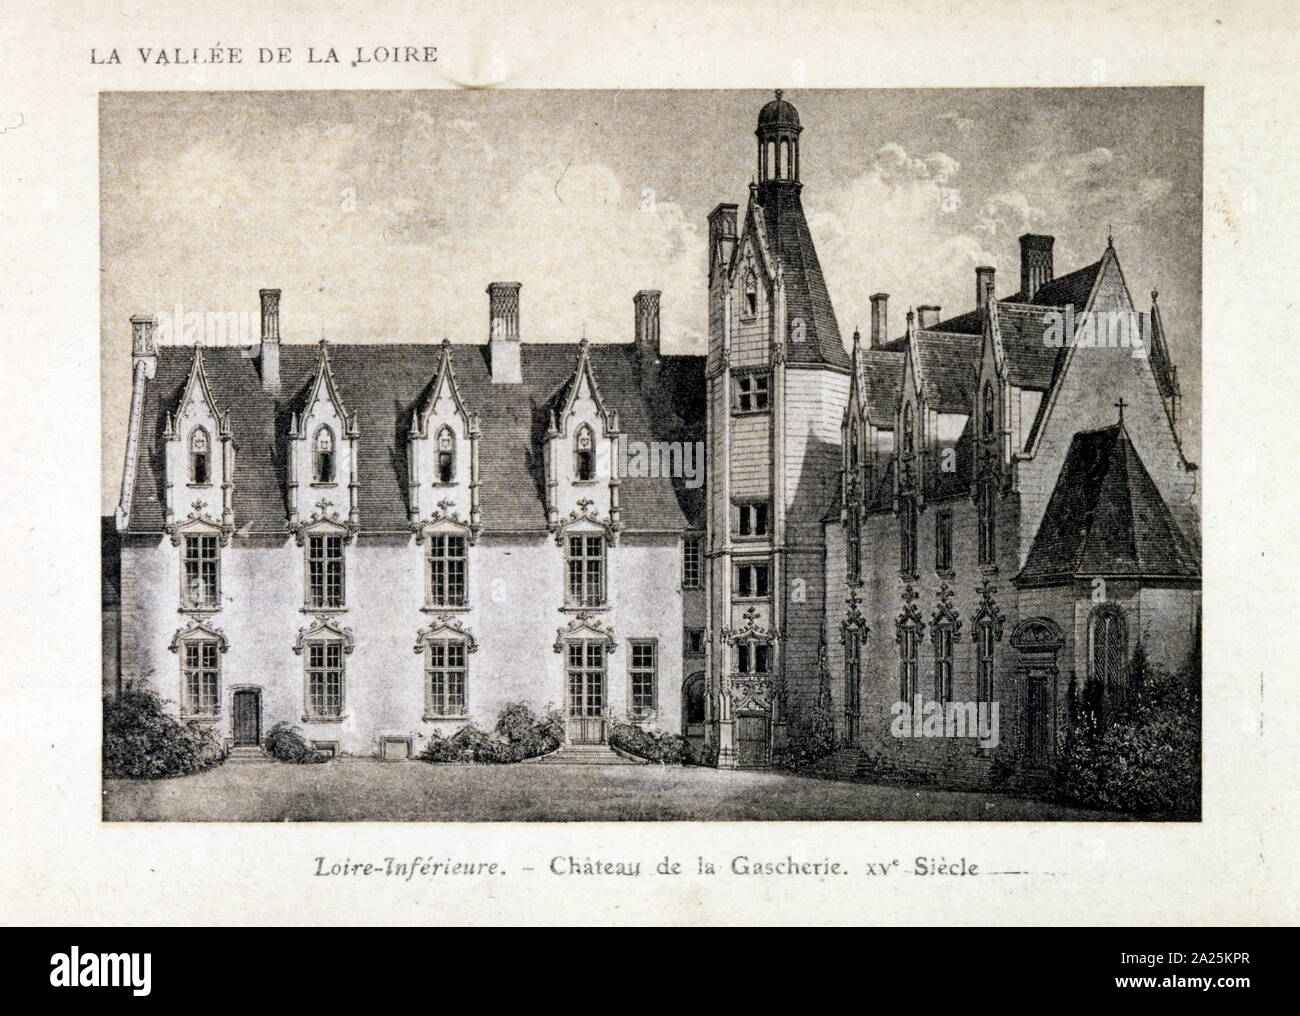 La storica Chateau de Tanlay, raffigurato in una illustrazione. Questo castello rinascimentale è in Borgogna, Francia. È stata la casa di famiglia di Ammiraglio Coligny durante le guerre di religione, è stato completato da Michel Particelli d'Hemery, sovrintendente delle finanze Mazarin, e divenne nel tardo diciassettesimo secolo, la proprietà del Marchese de Tanlay Foto Stock